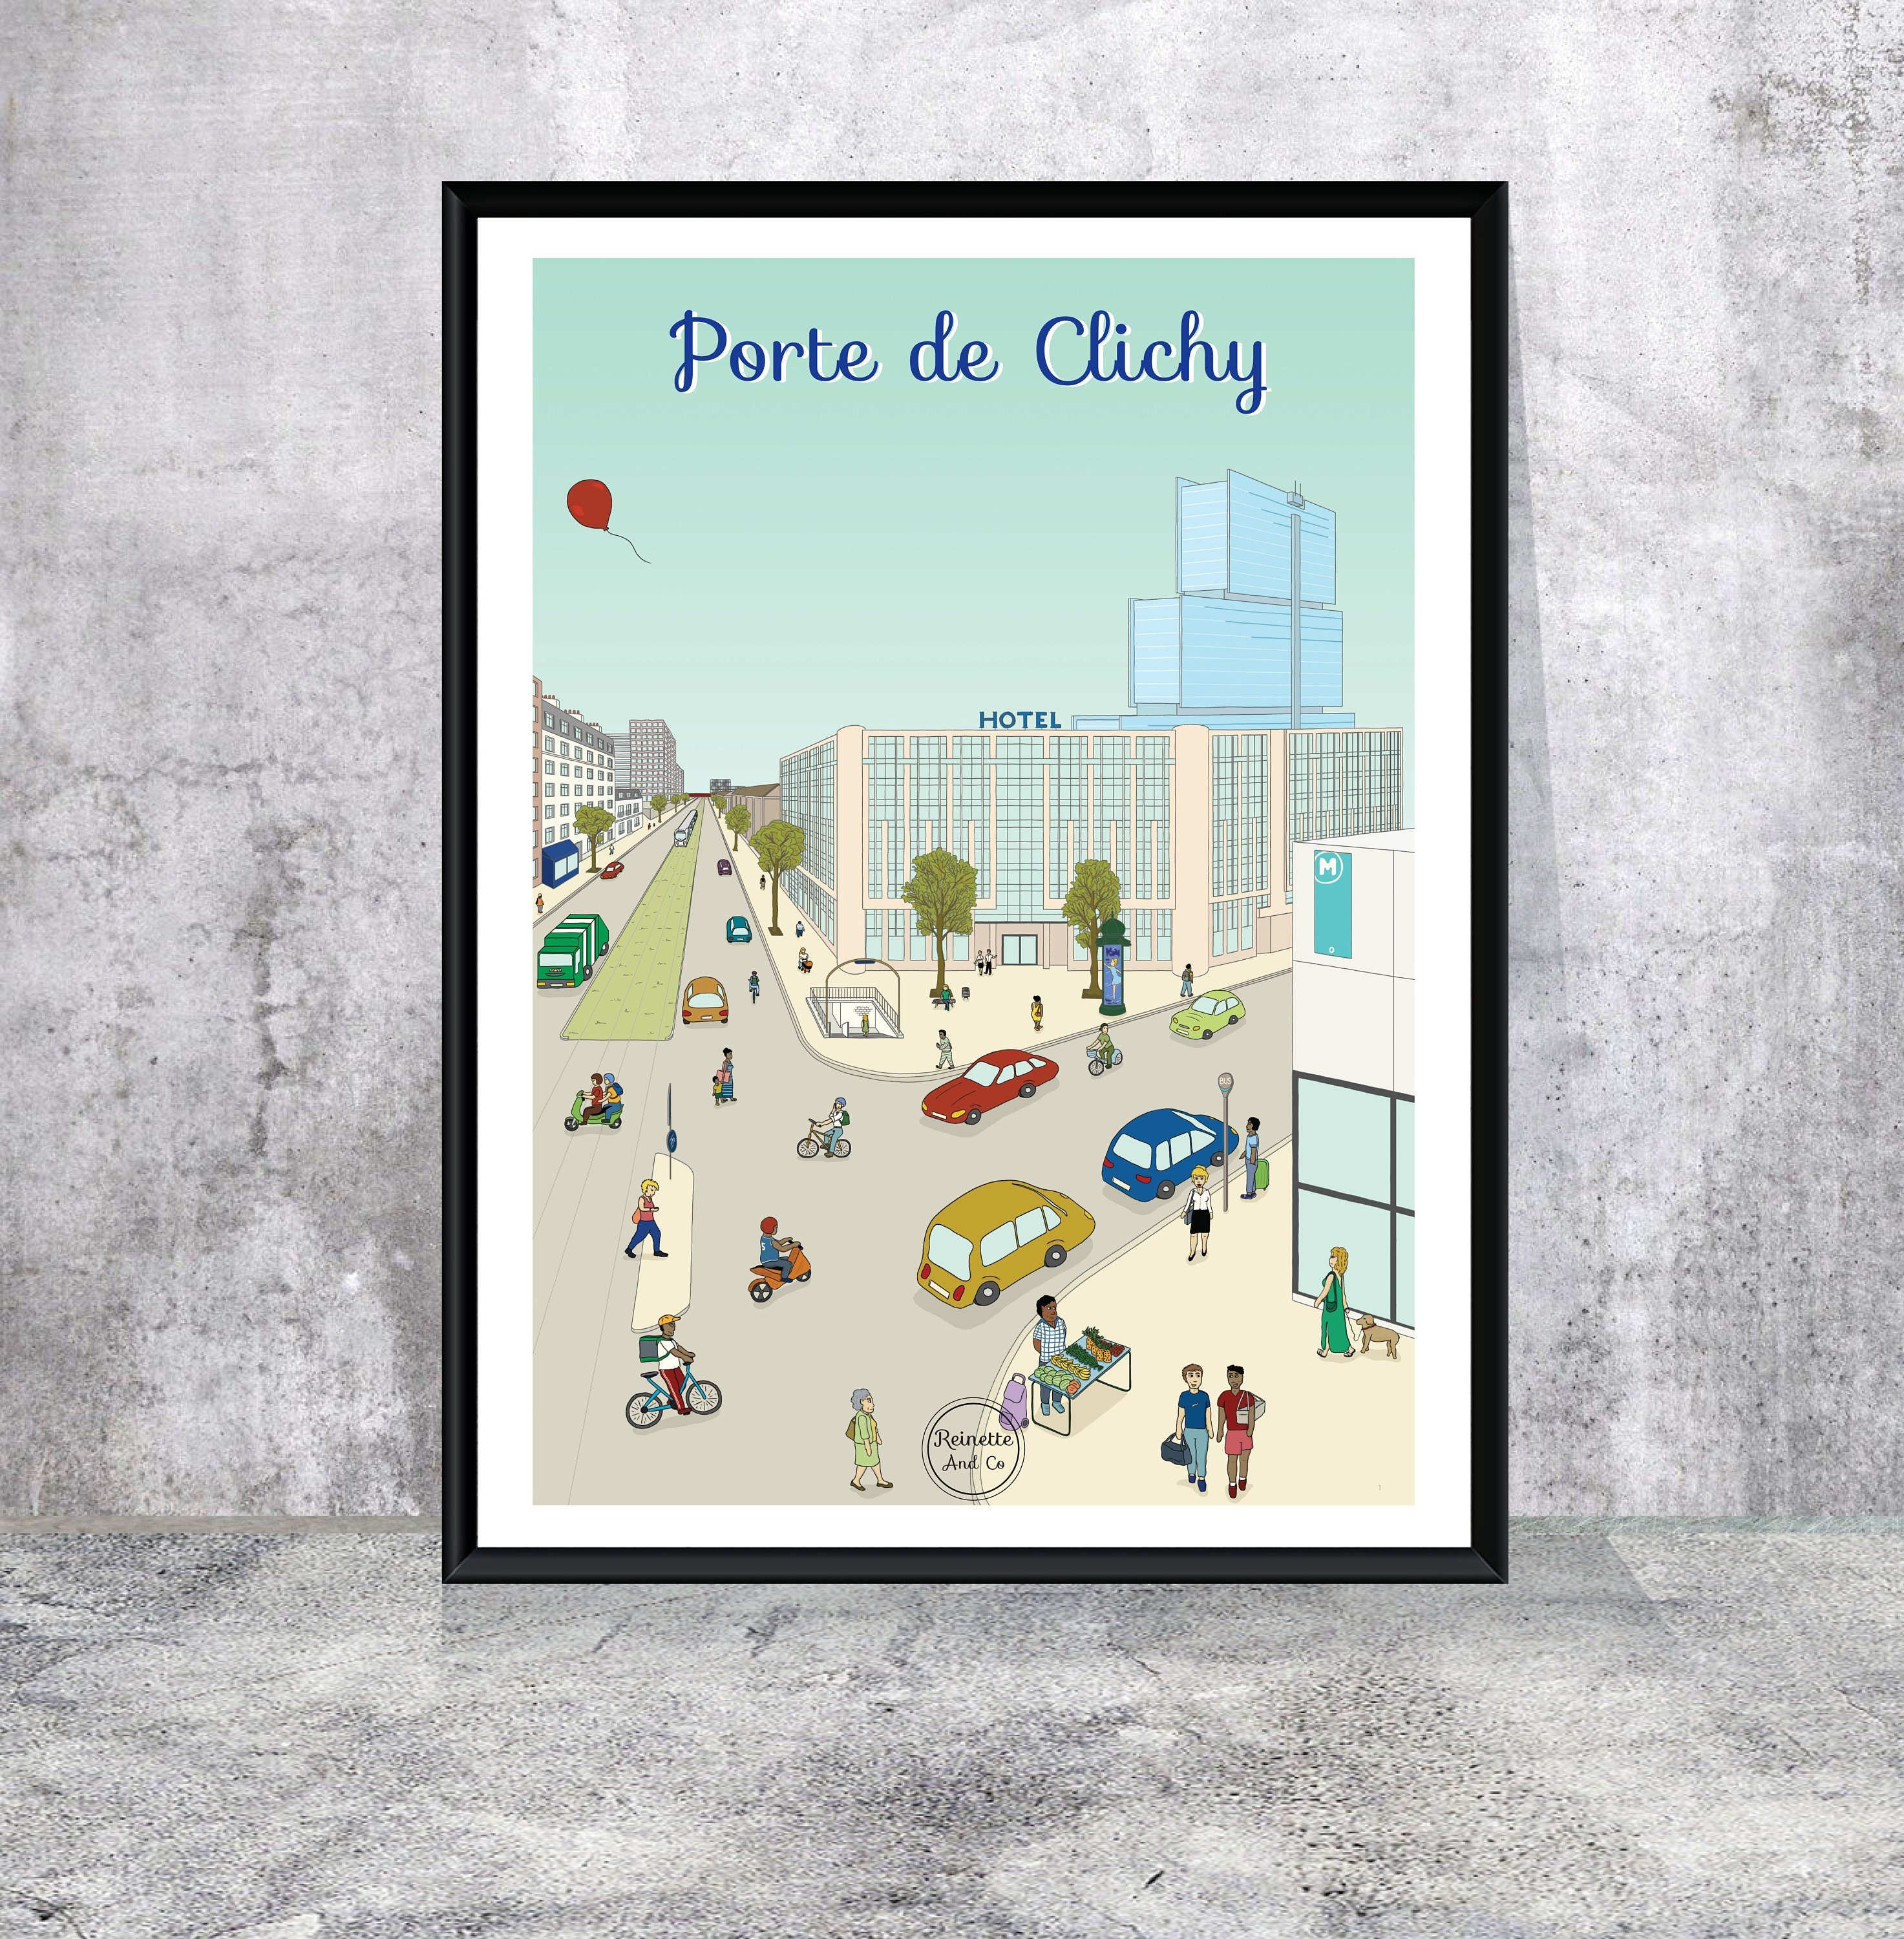 Affiche Porte de Clichy, Paris 17 | Affiche Poster Art Digital Illustration Décoration